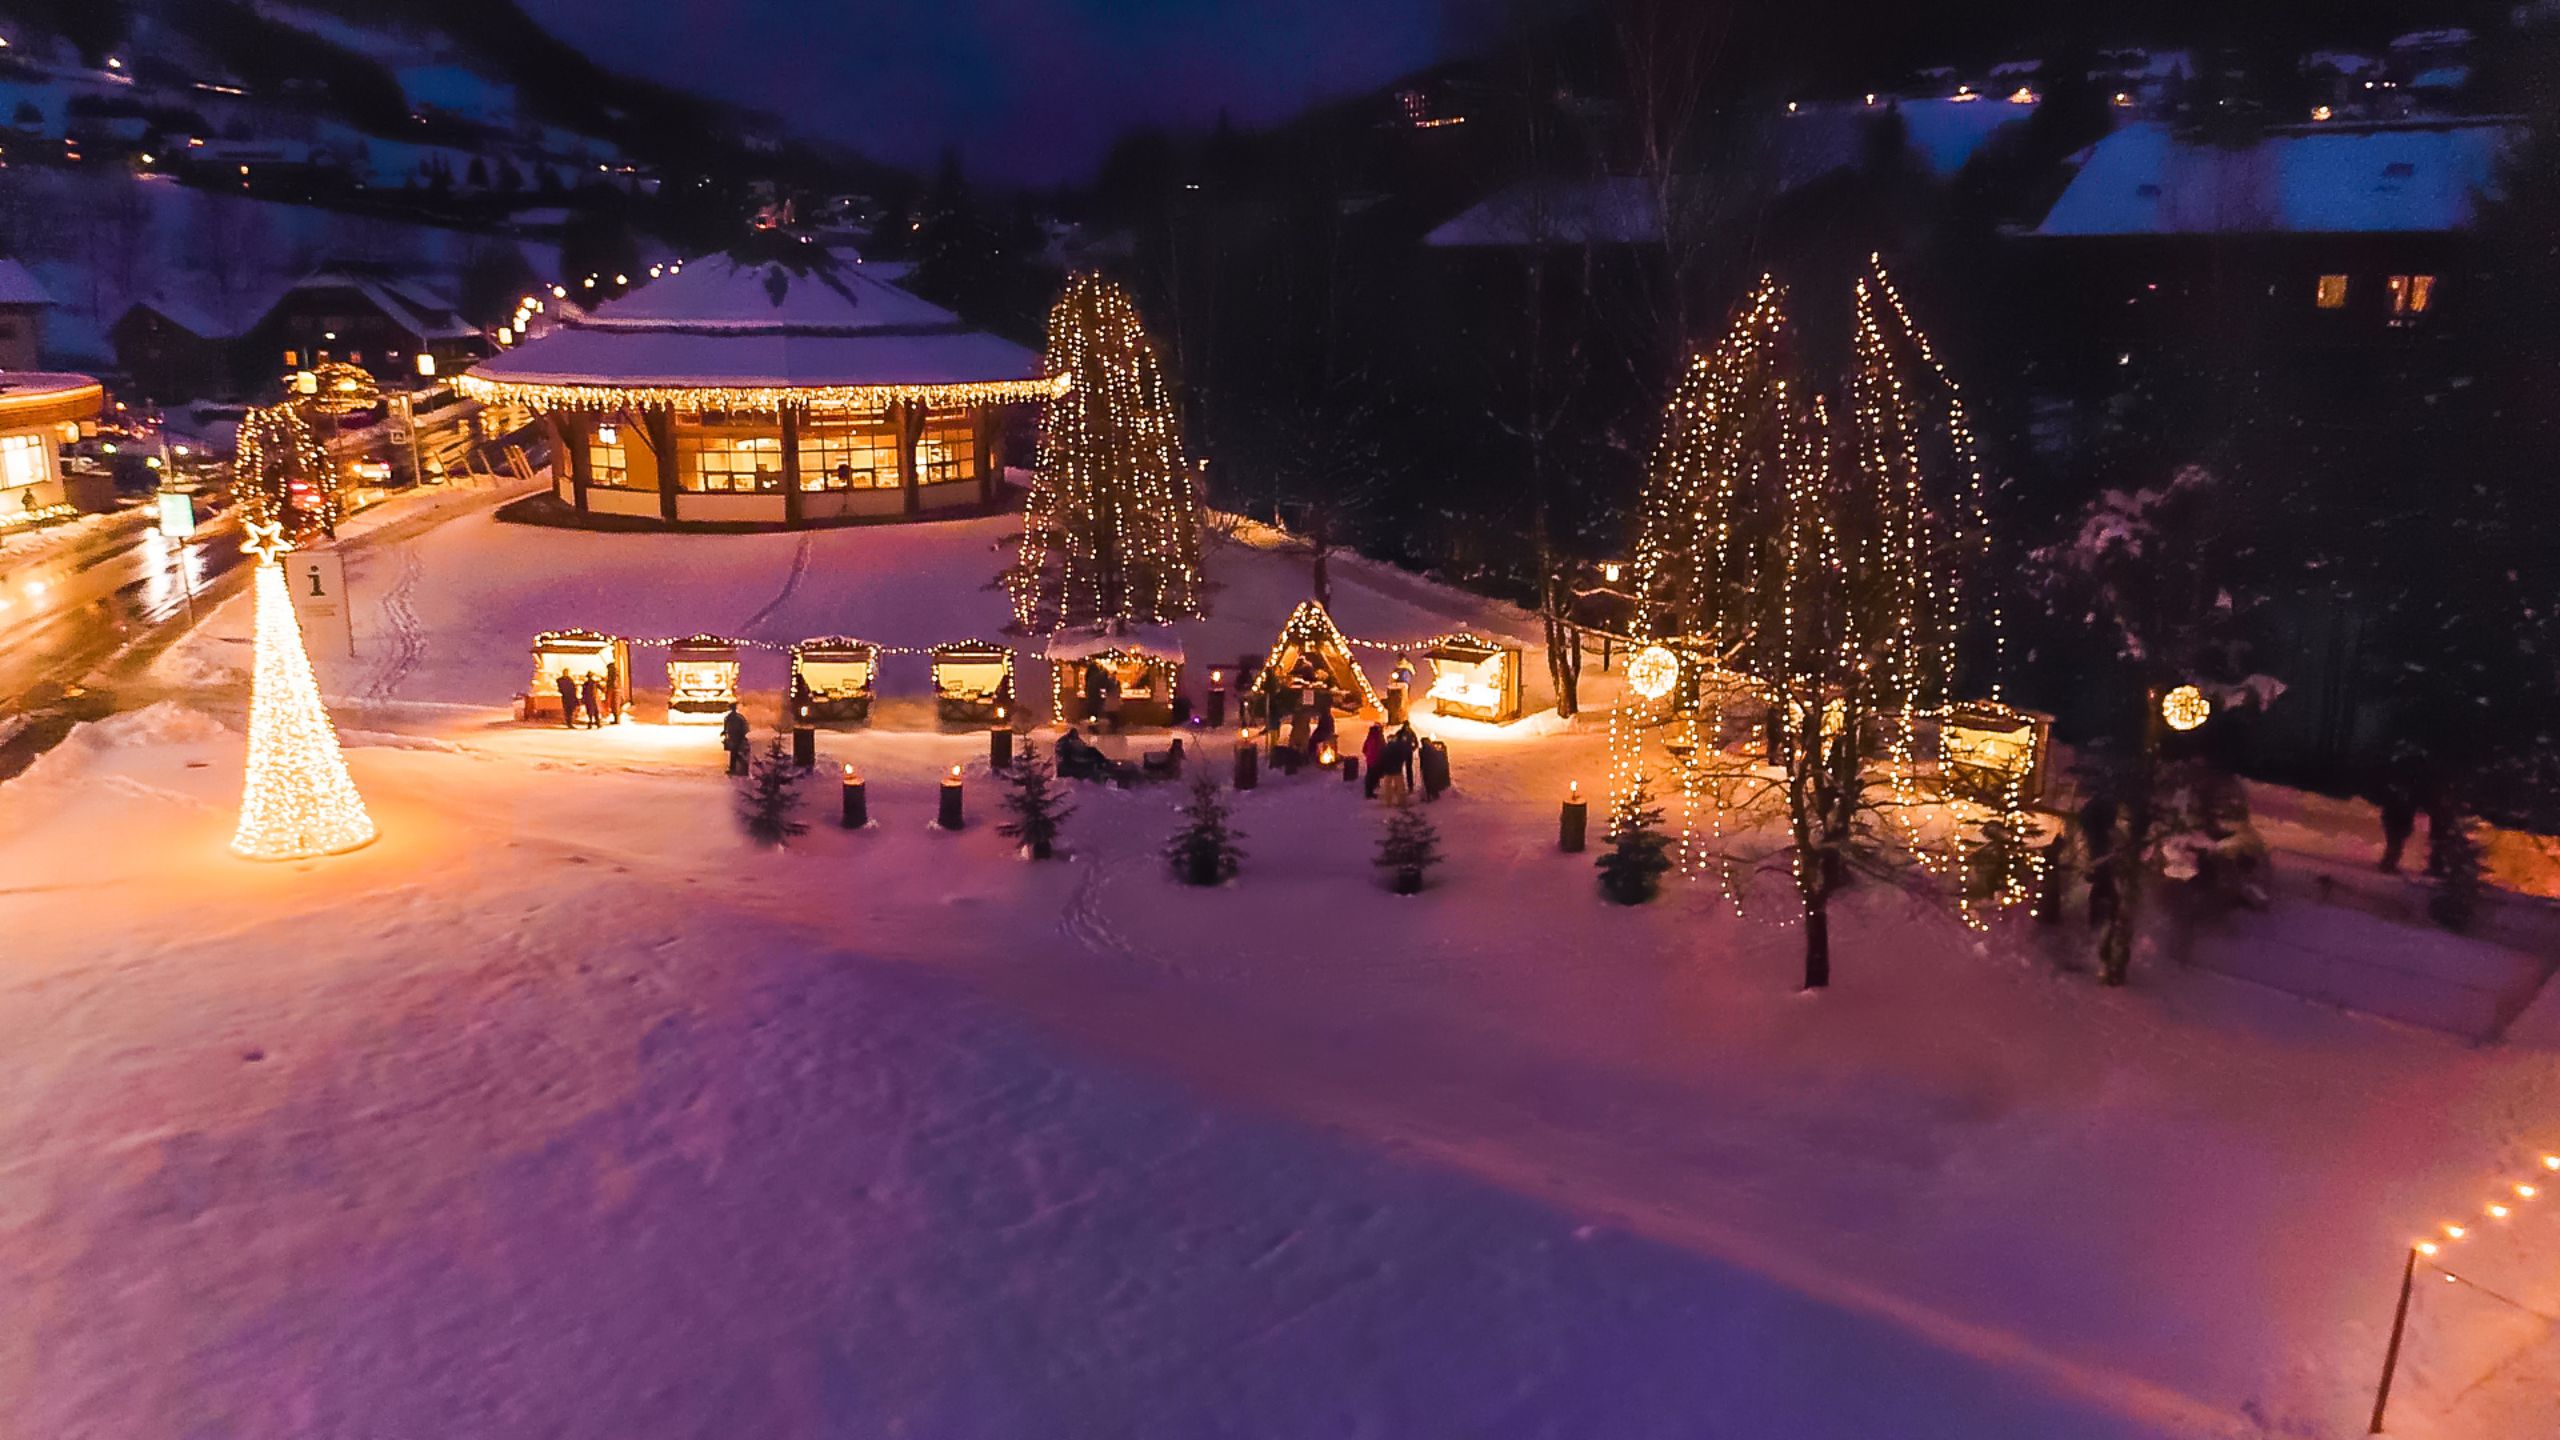 Hütten und Weihnachtsbeleuchtung in Bad Kleinkirchheim